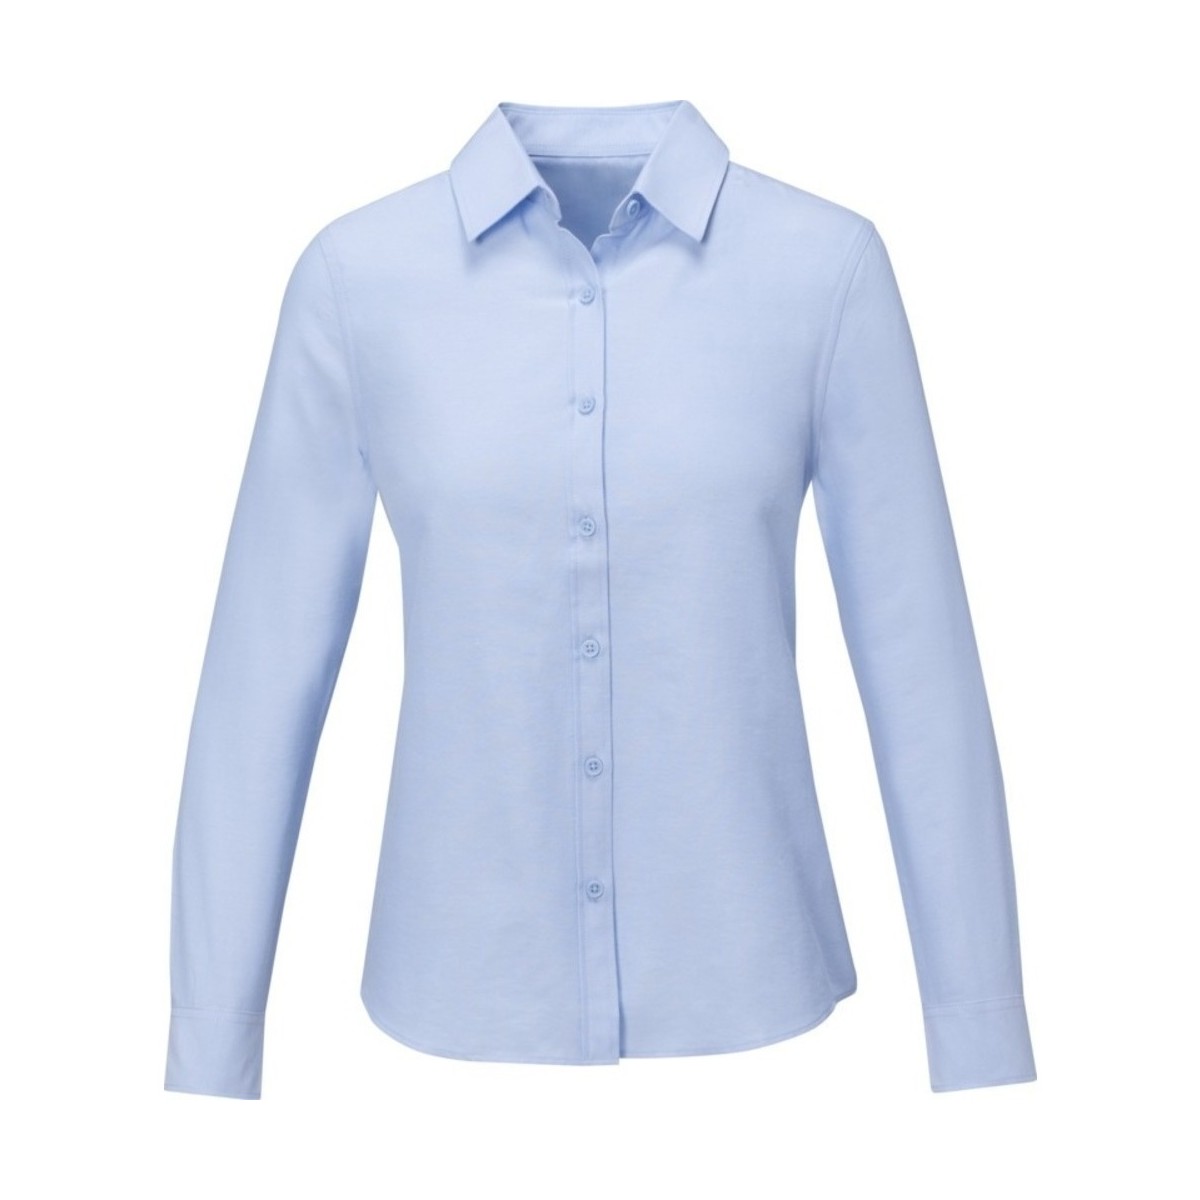 Vêtements Femme Chemises / Chemisiers Elevate Pollux Bleu